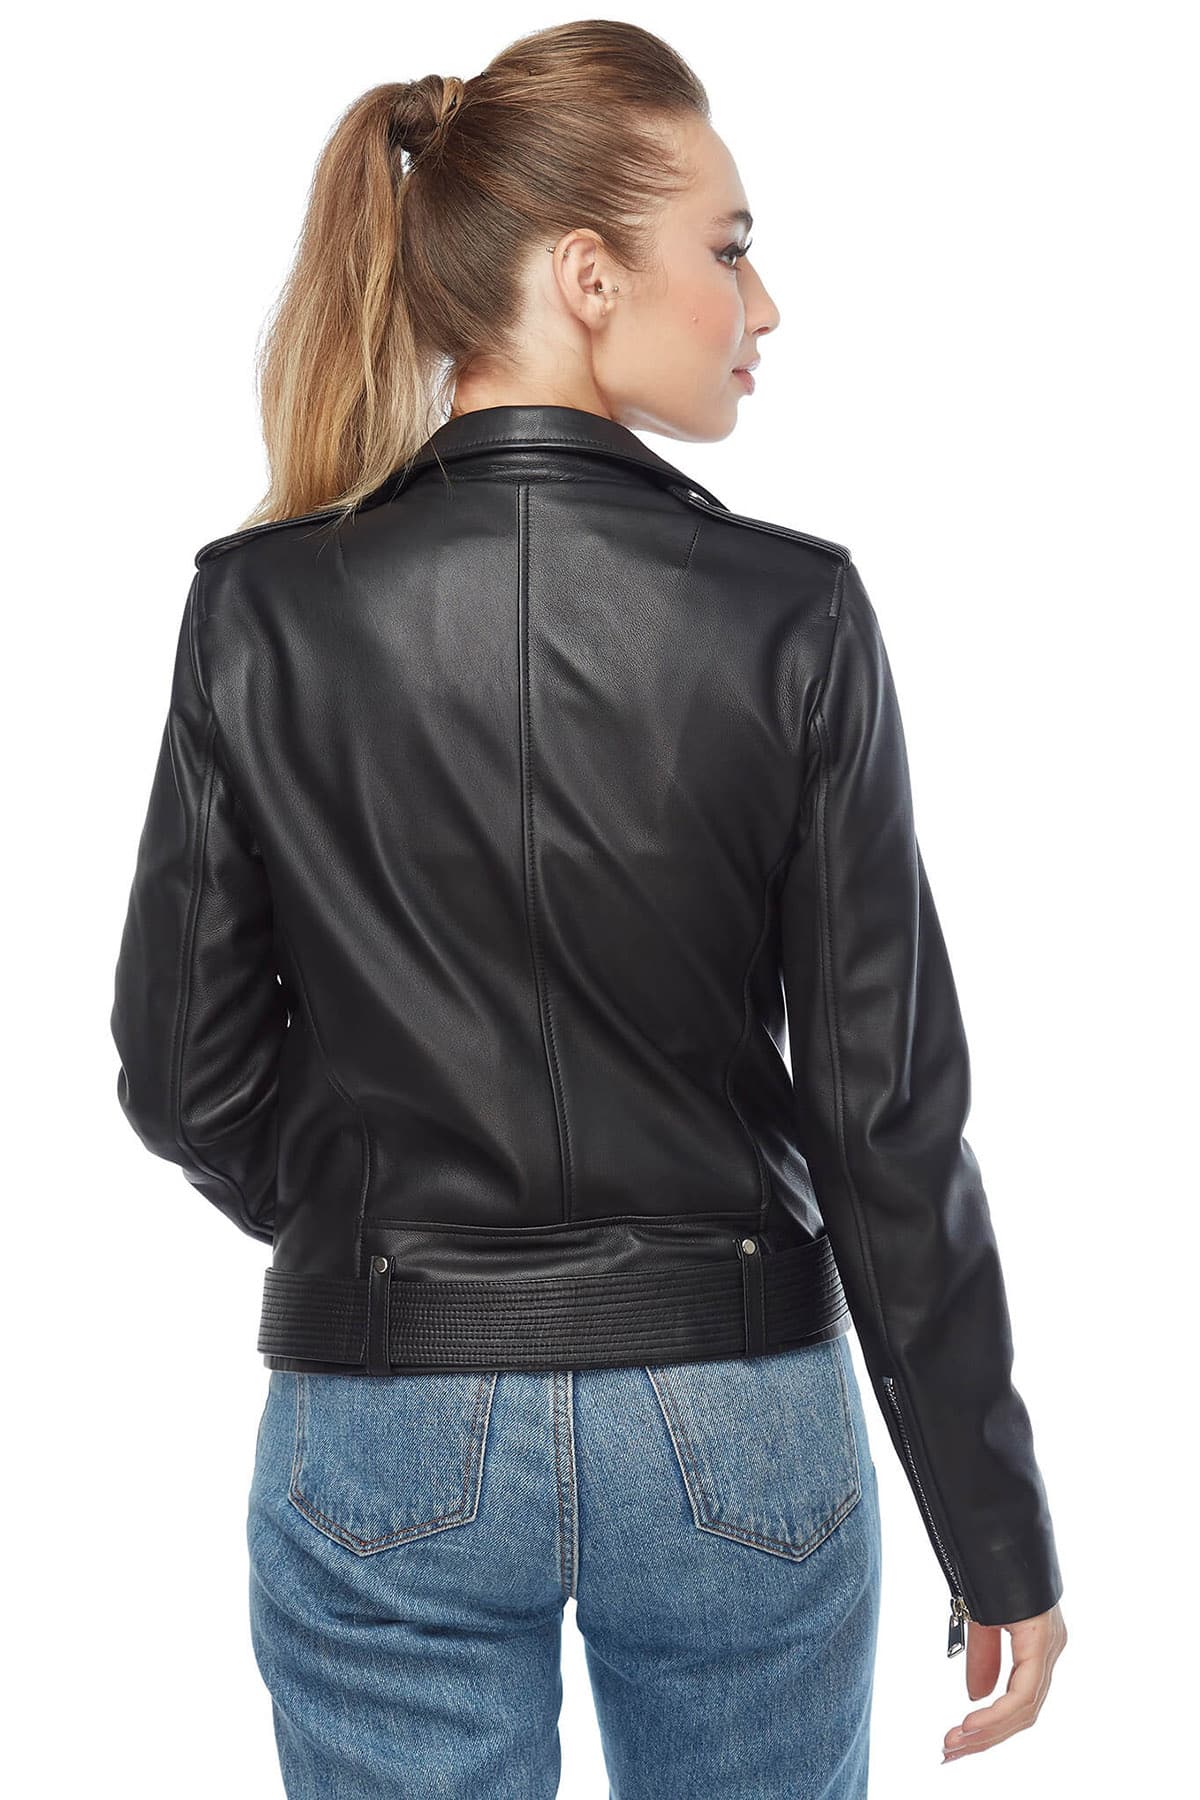 Women Burgundy Leather Jacket - Fashion Leather Jacket in USA